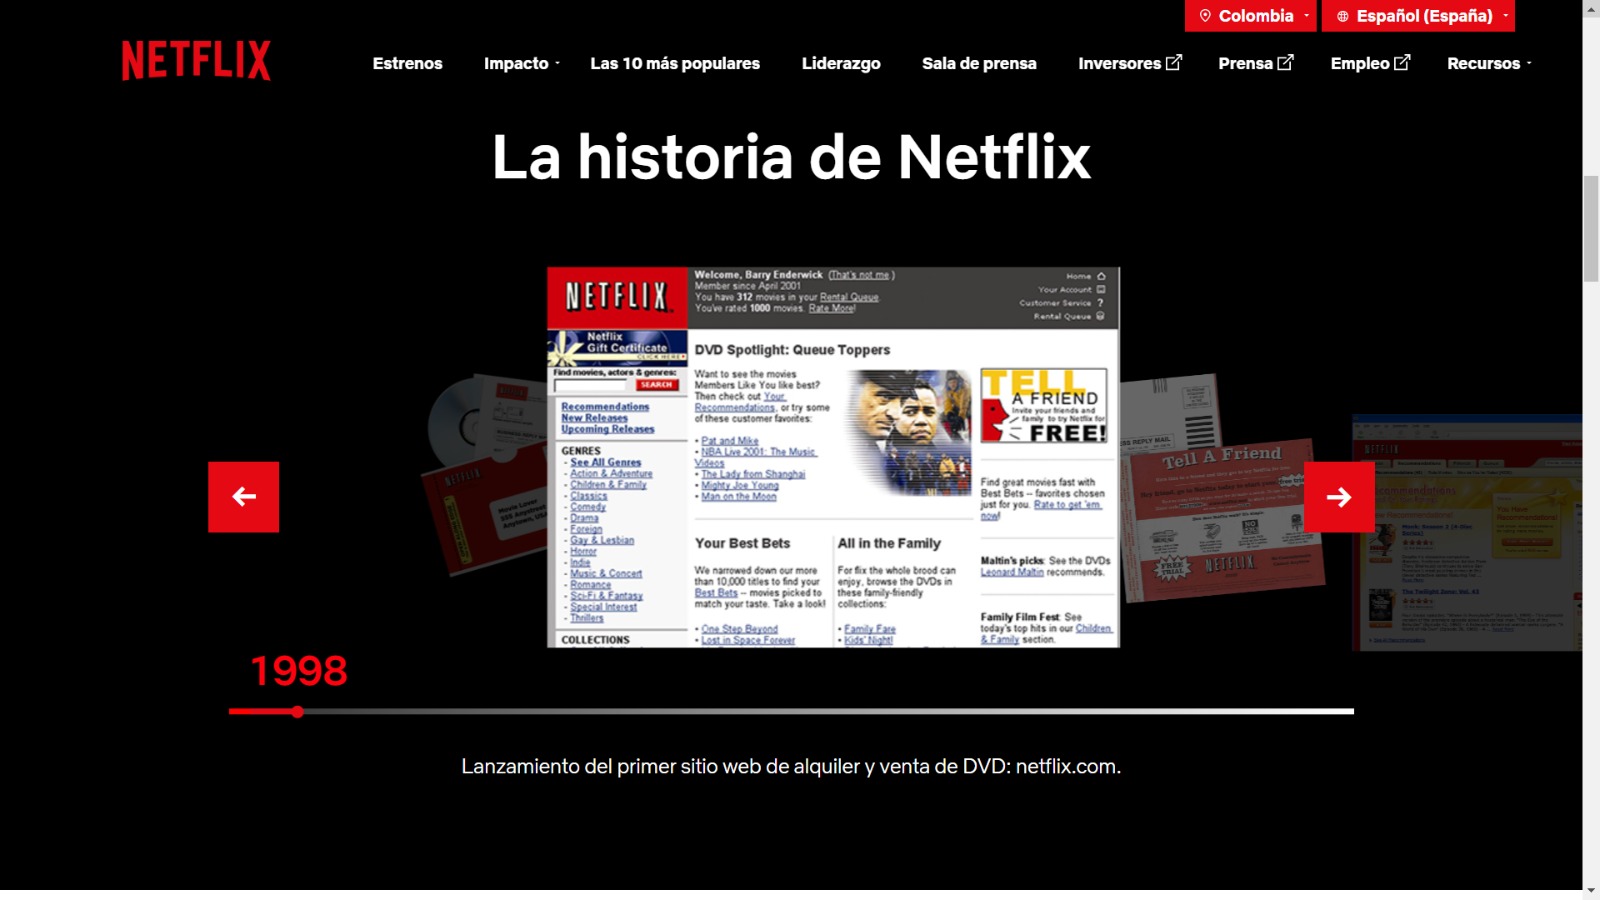 Lanzamiento del primer sitio web de alquiler y venta de DVD: netflix.com (pantallazo).